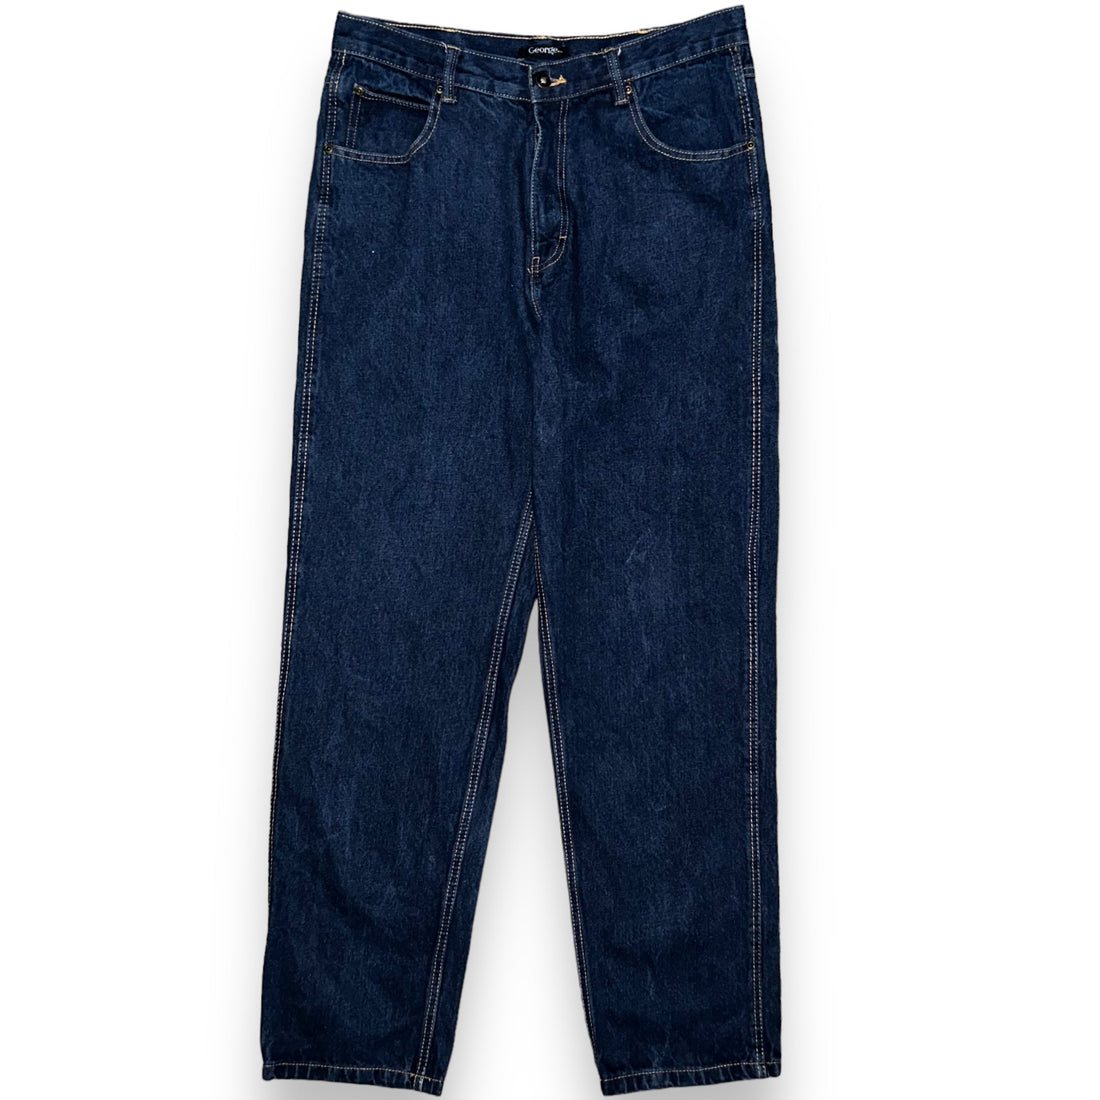 Jeans (36 US XL)